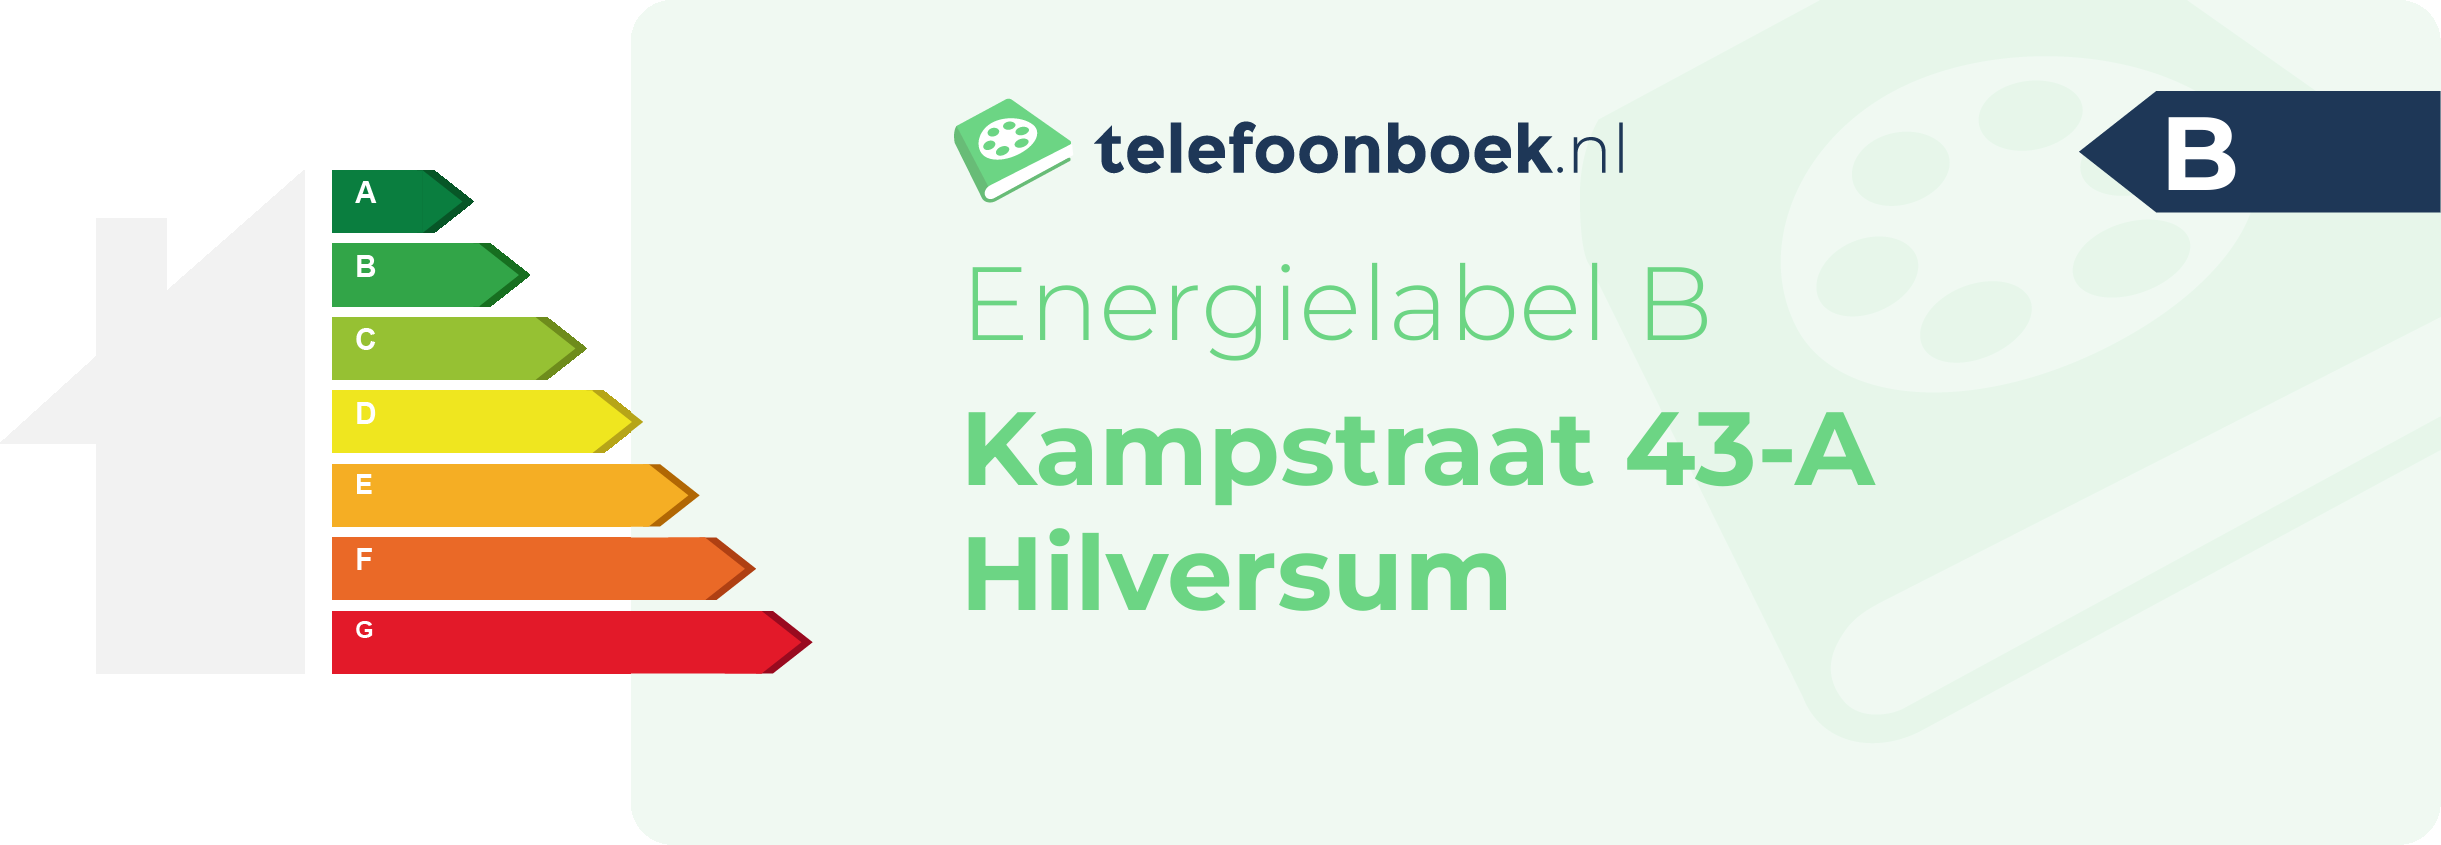 Energielabel Kampstraat 43-A Hilversum